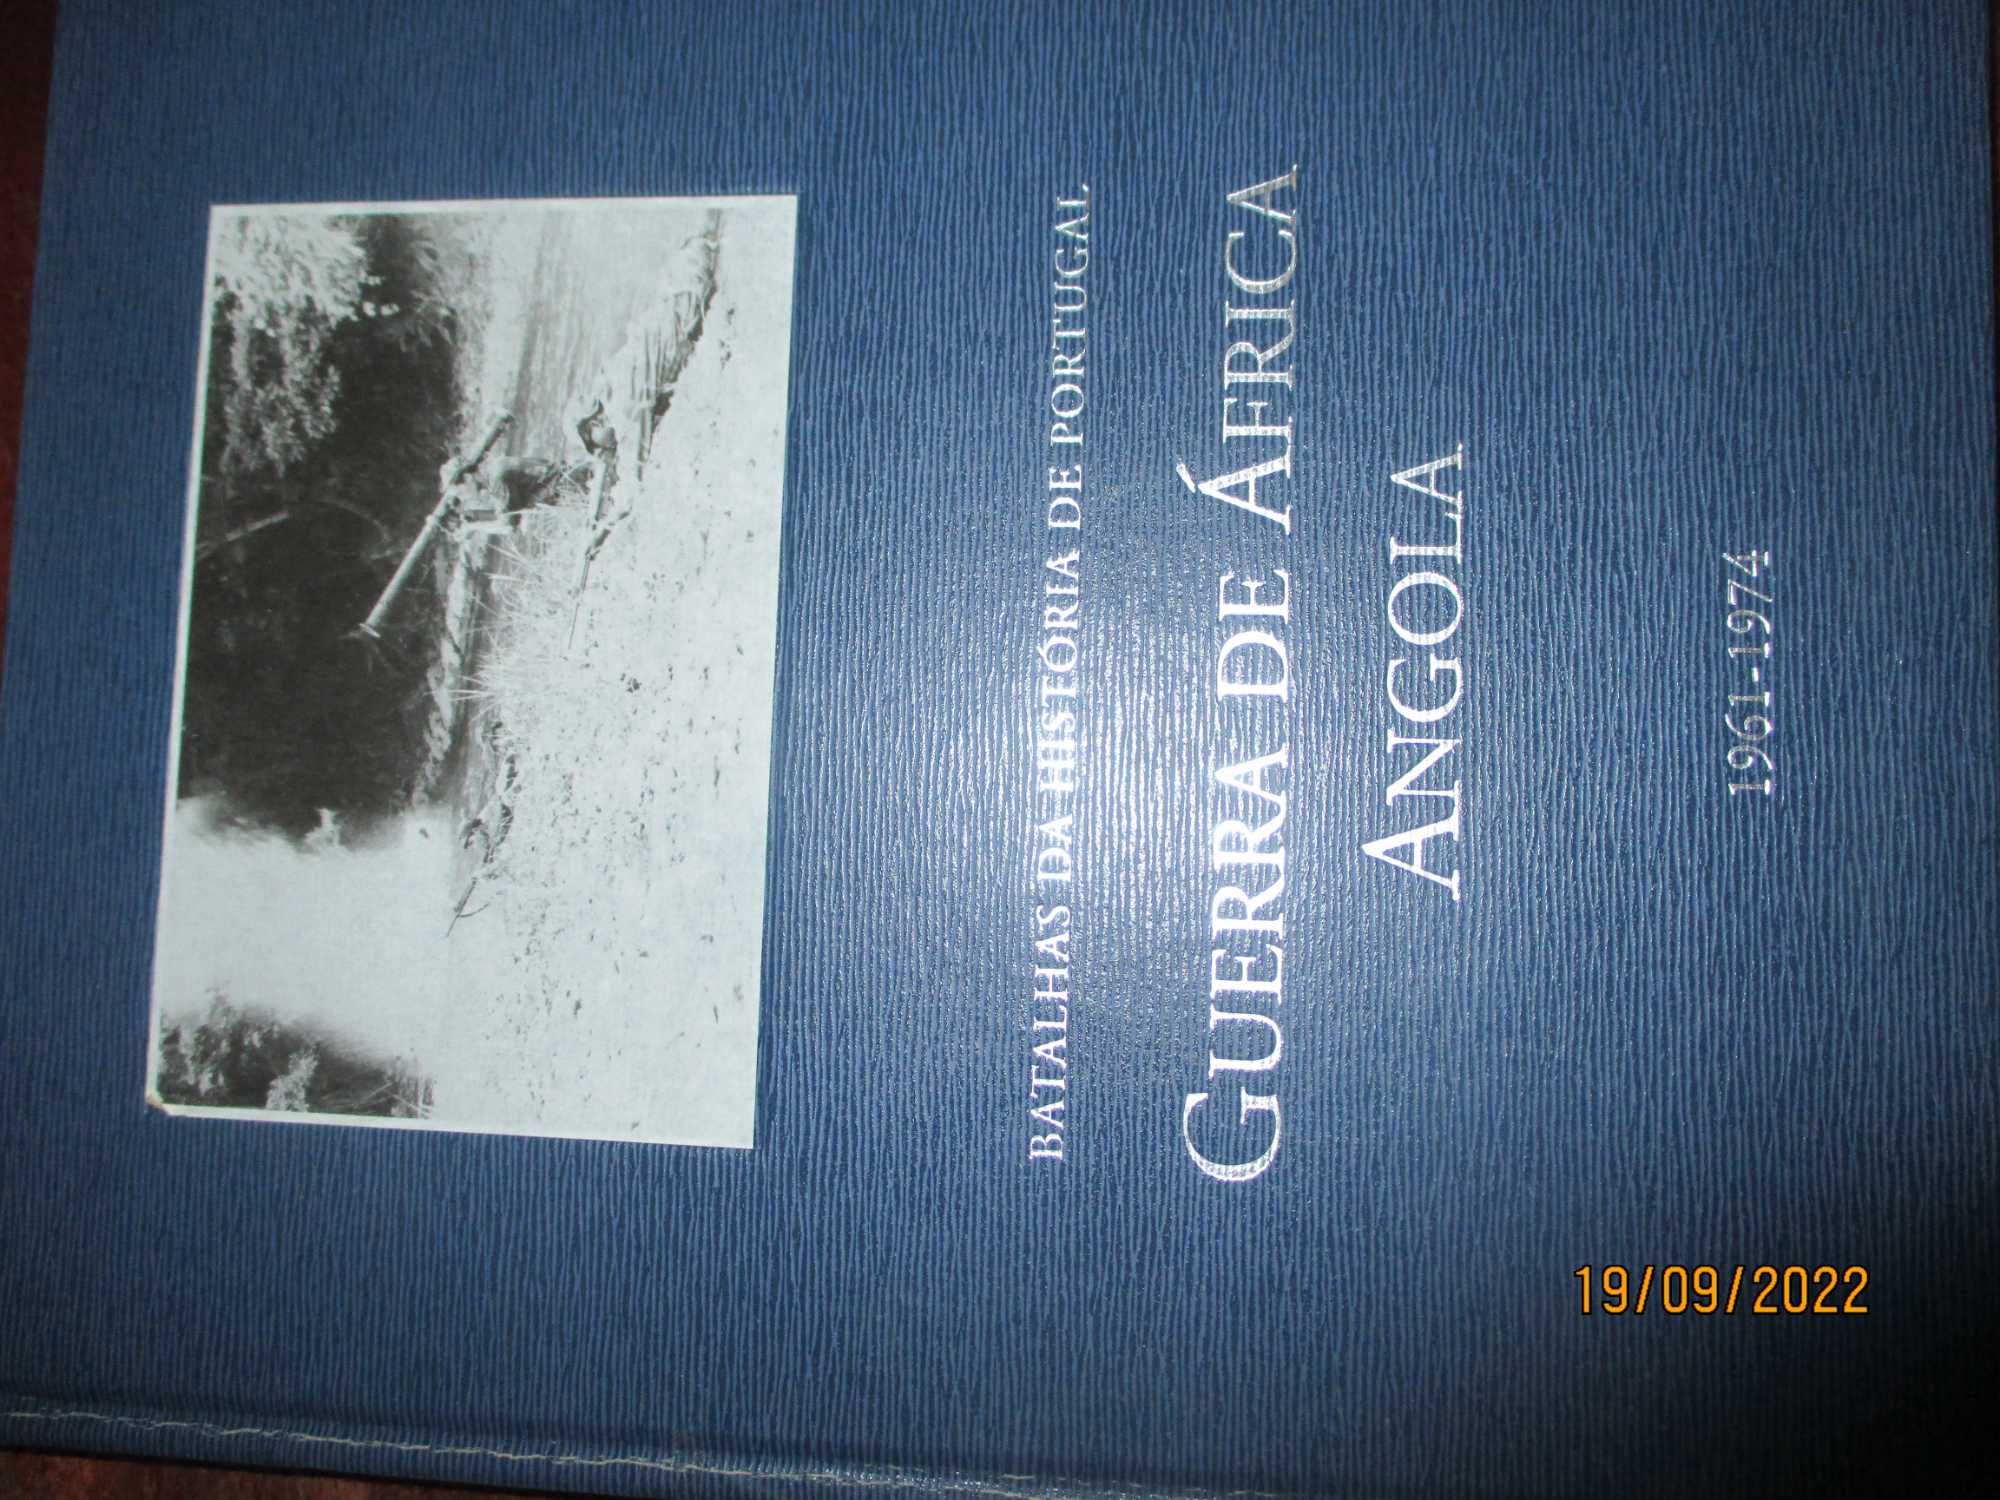 Livro - Guerra de àfrica - Angola - Batalhas da História de Portugal